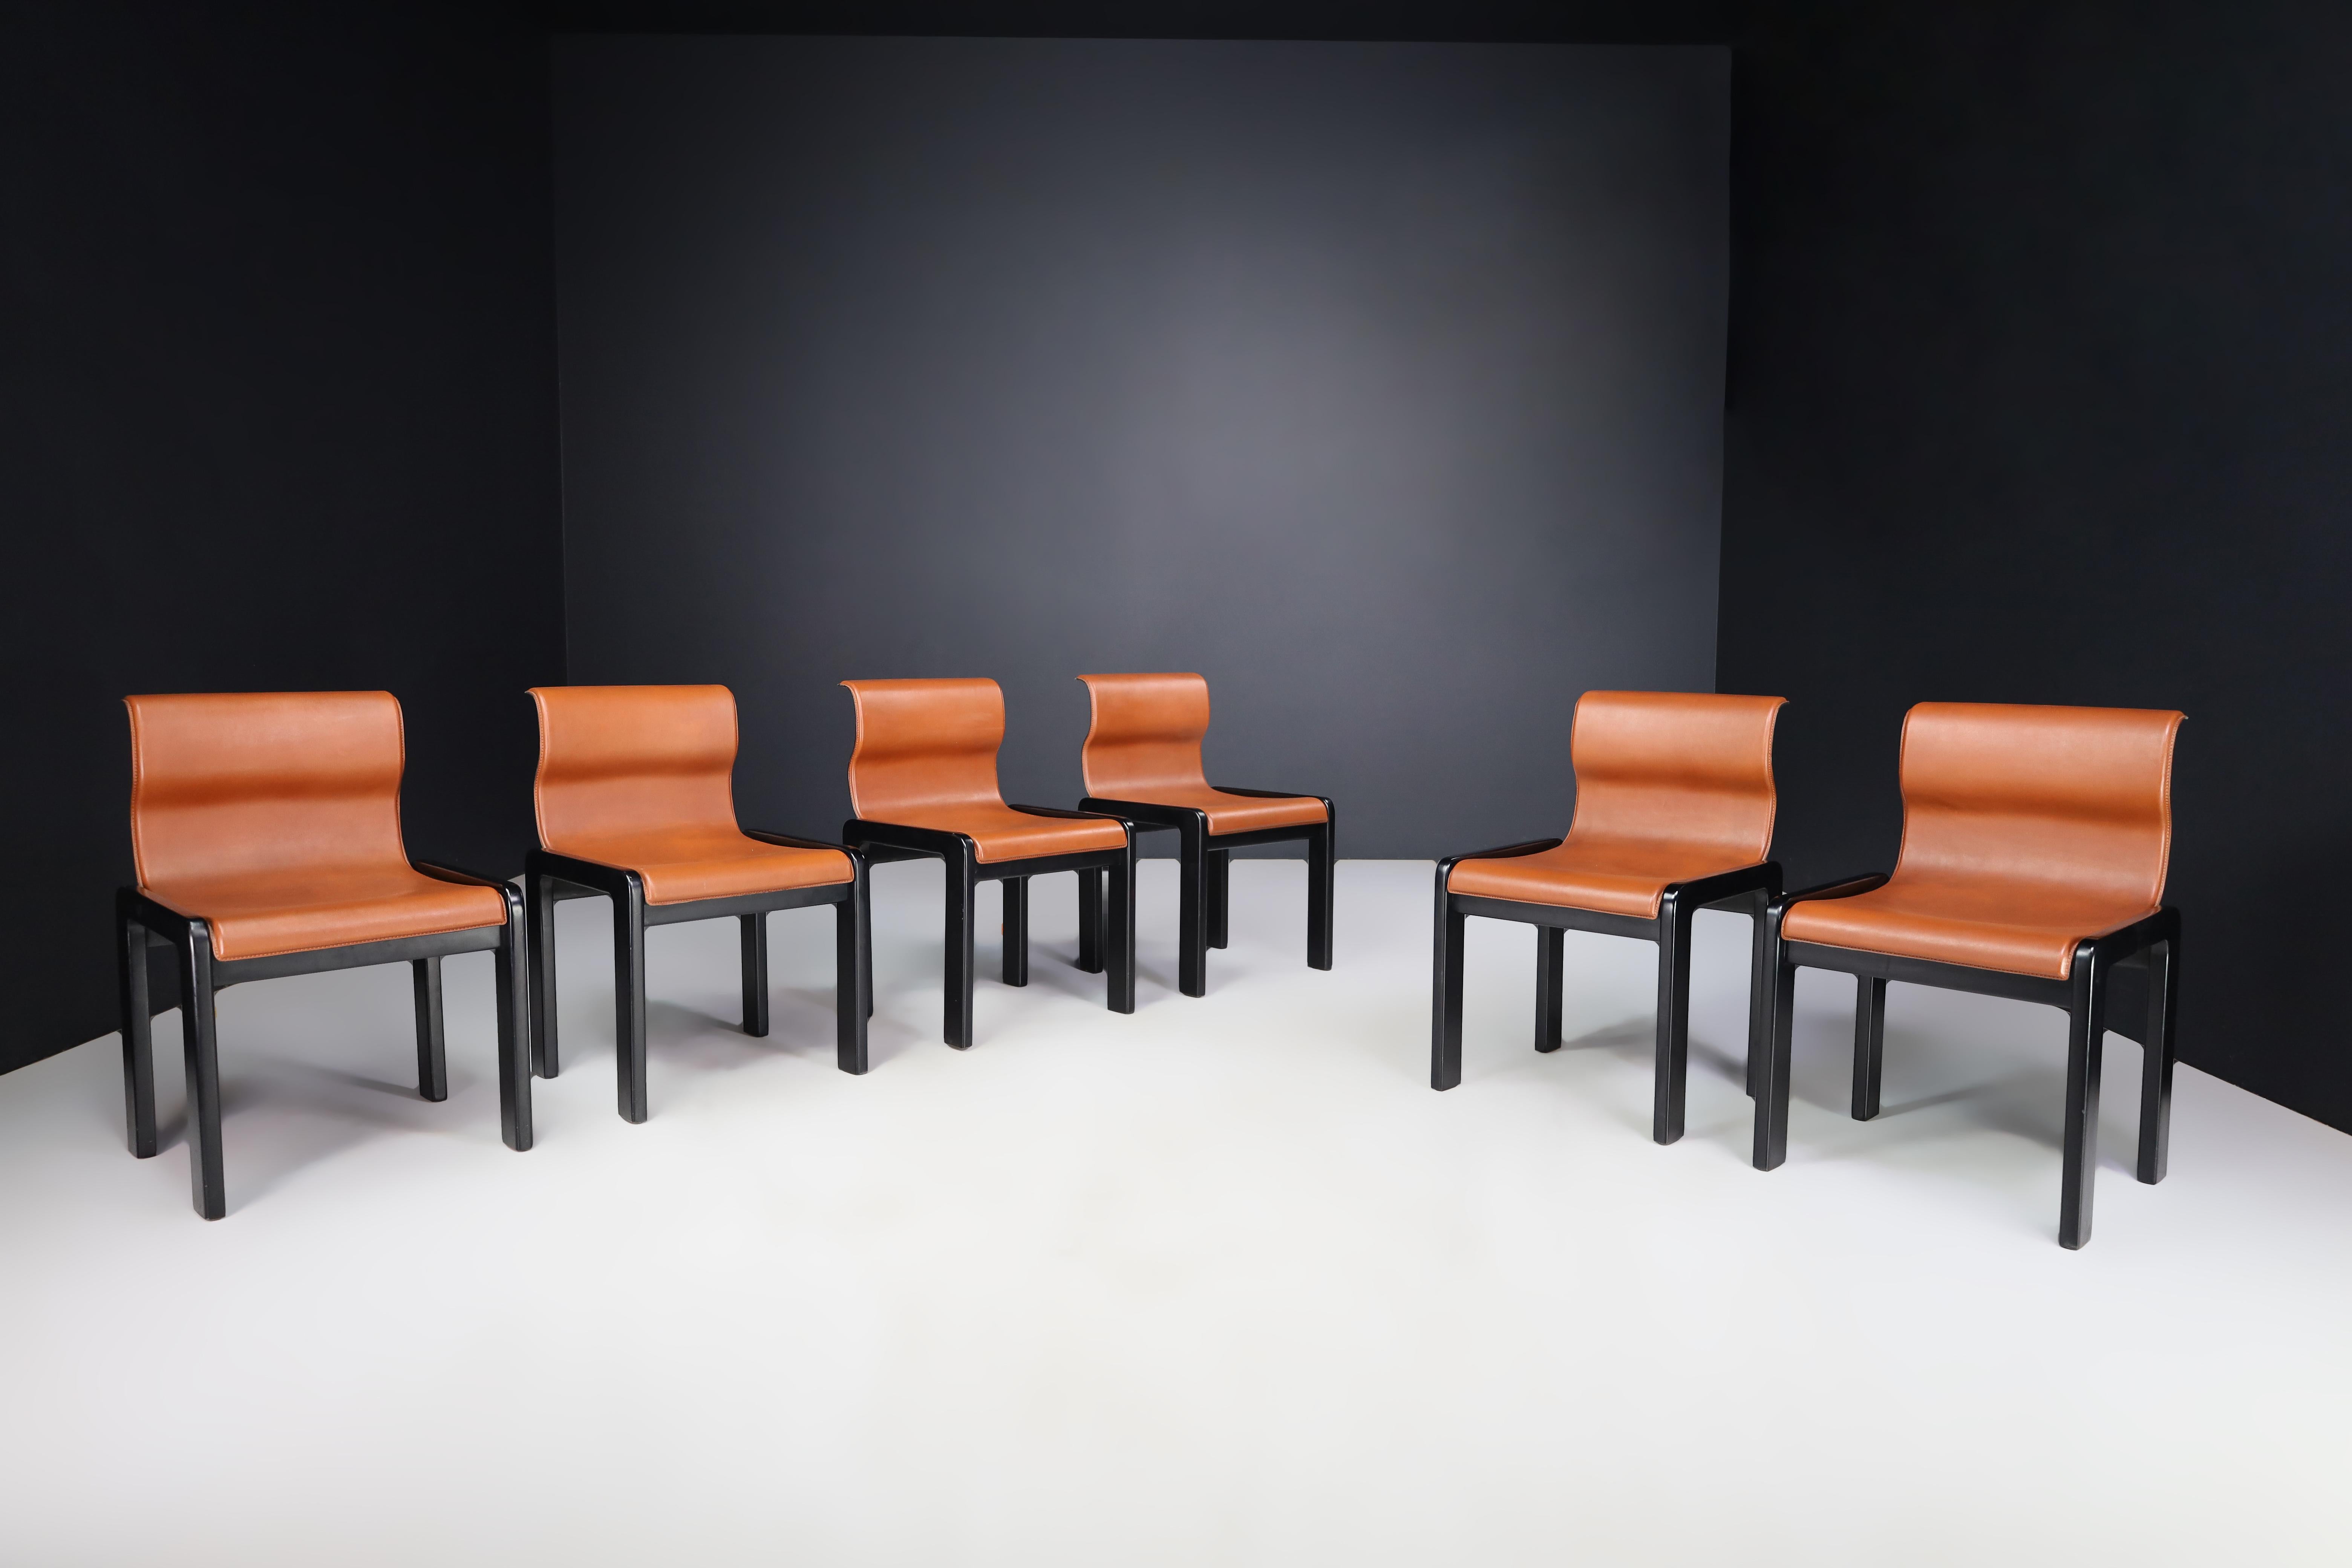 Afra & Tobia Scarpa ensemble de six chaises de salle à manger en cuir cognac et bois laqué noir, Italie 1966

Voici un superbe ensemble de six chaises de salle à manger en cuir brun cognac et bois laqué noir. Ils ont été conçus en Italie en 1966 par